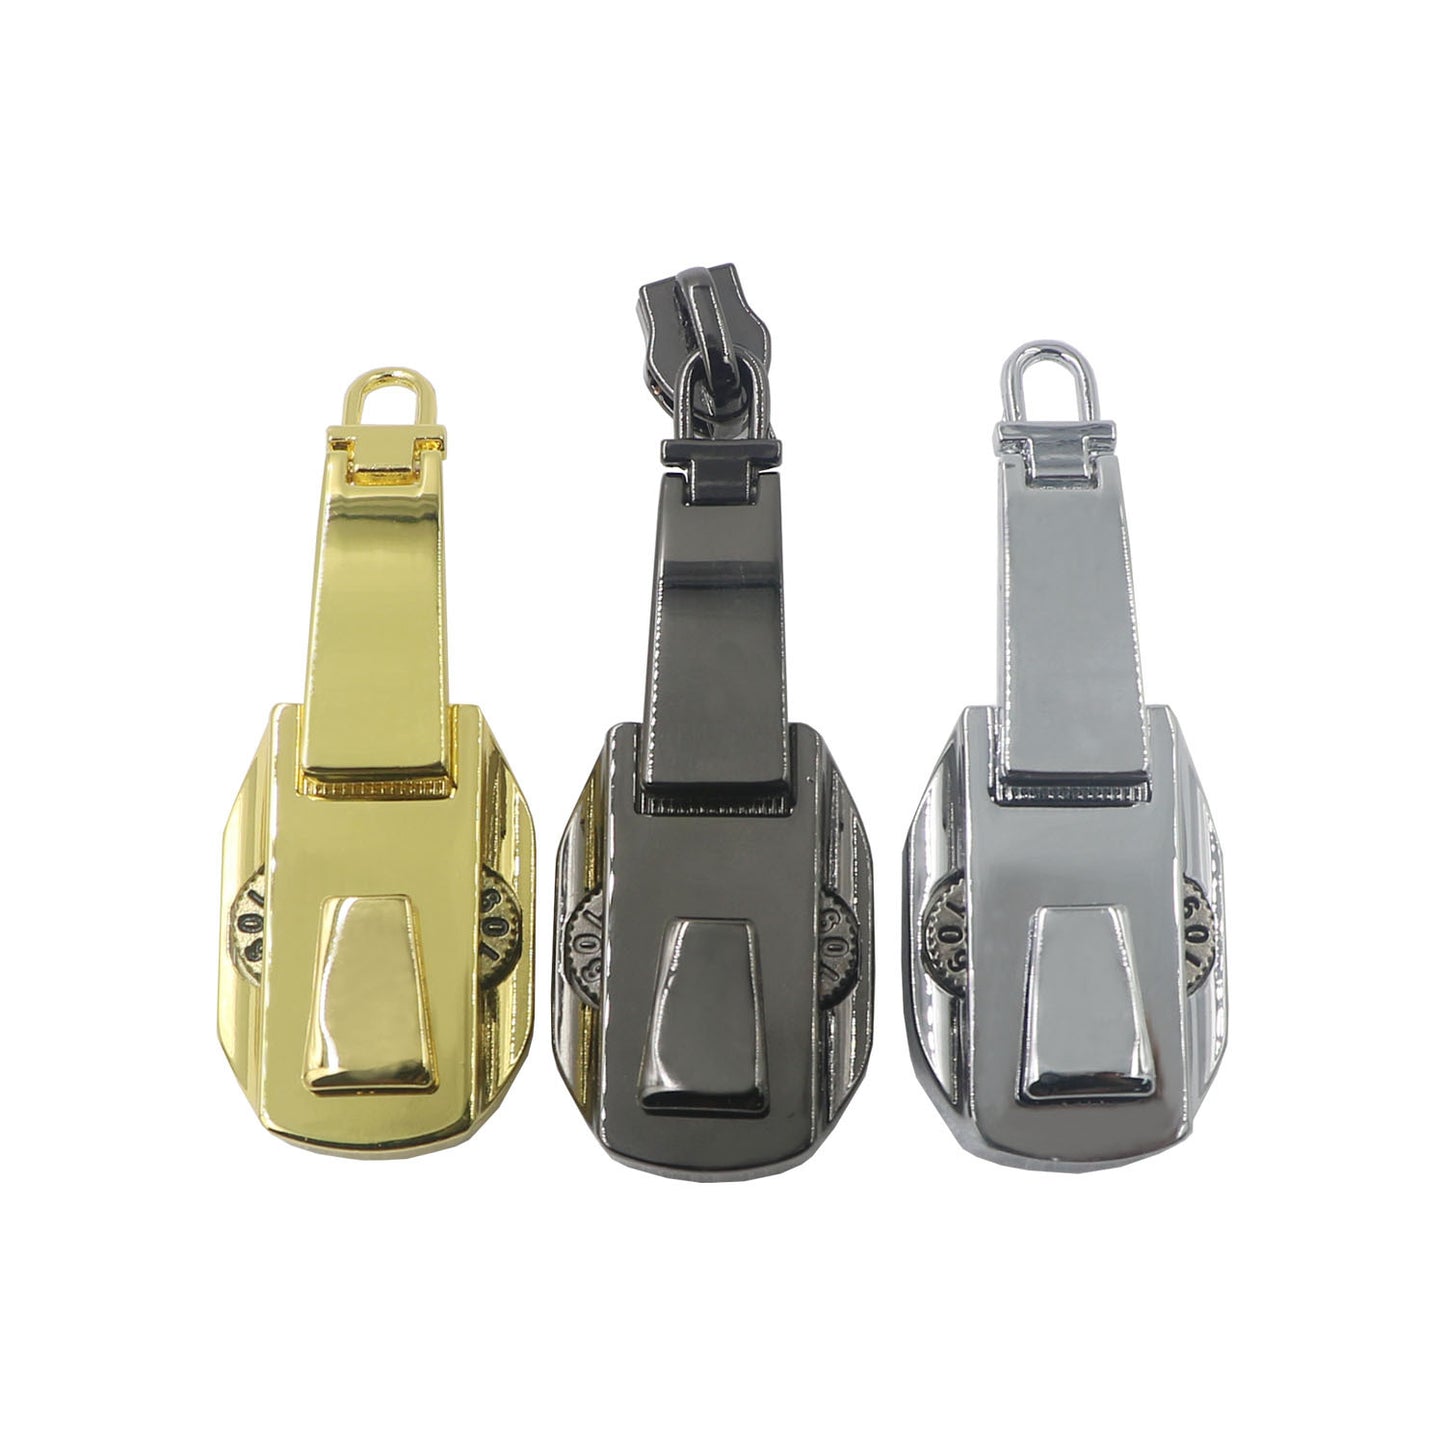 Customizable Exquisite Backpack Zipper Lock Security Metal 2-Digit Combination Zipper Lock-7